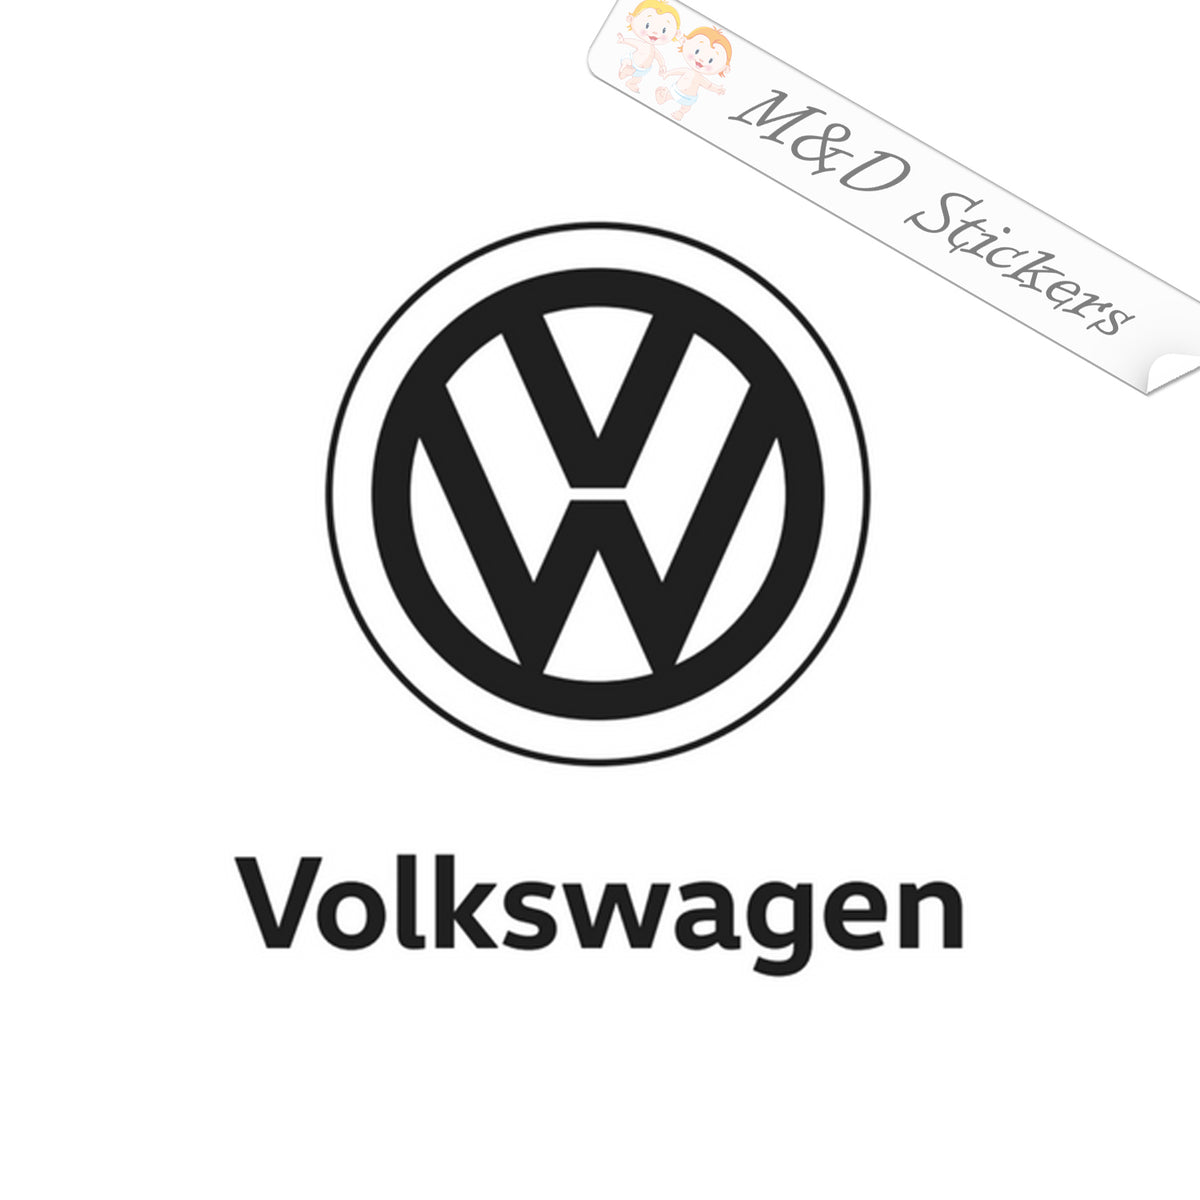 AUTOCOLLANT VW LOGO 2. ACHETEZ DES AUTOCOLLANTS EN VINYLE.